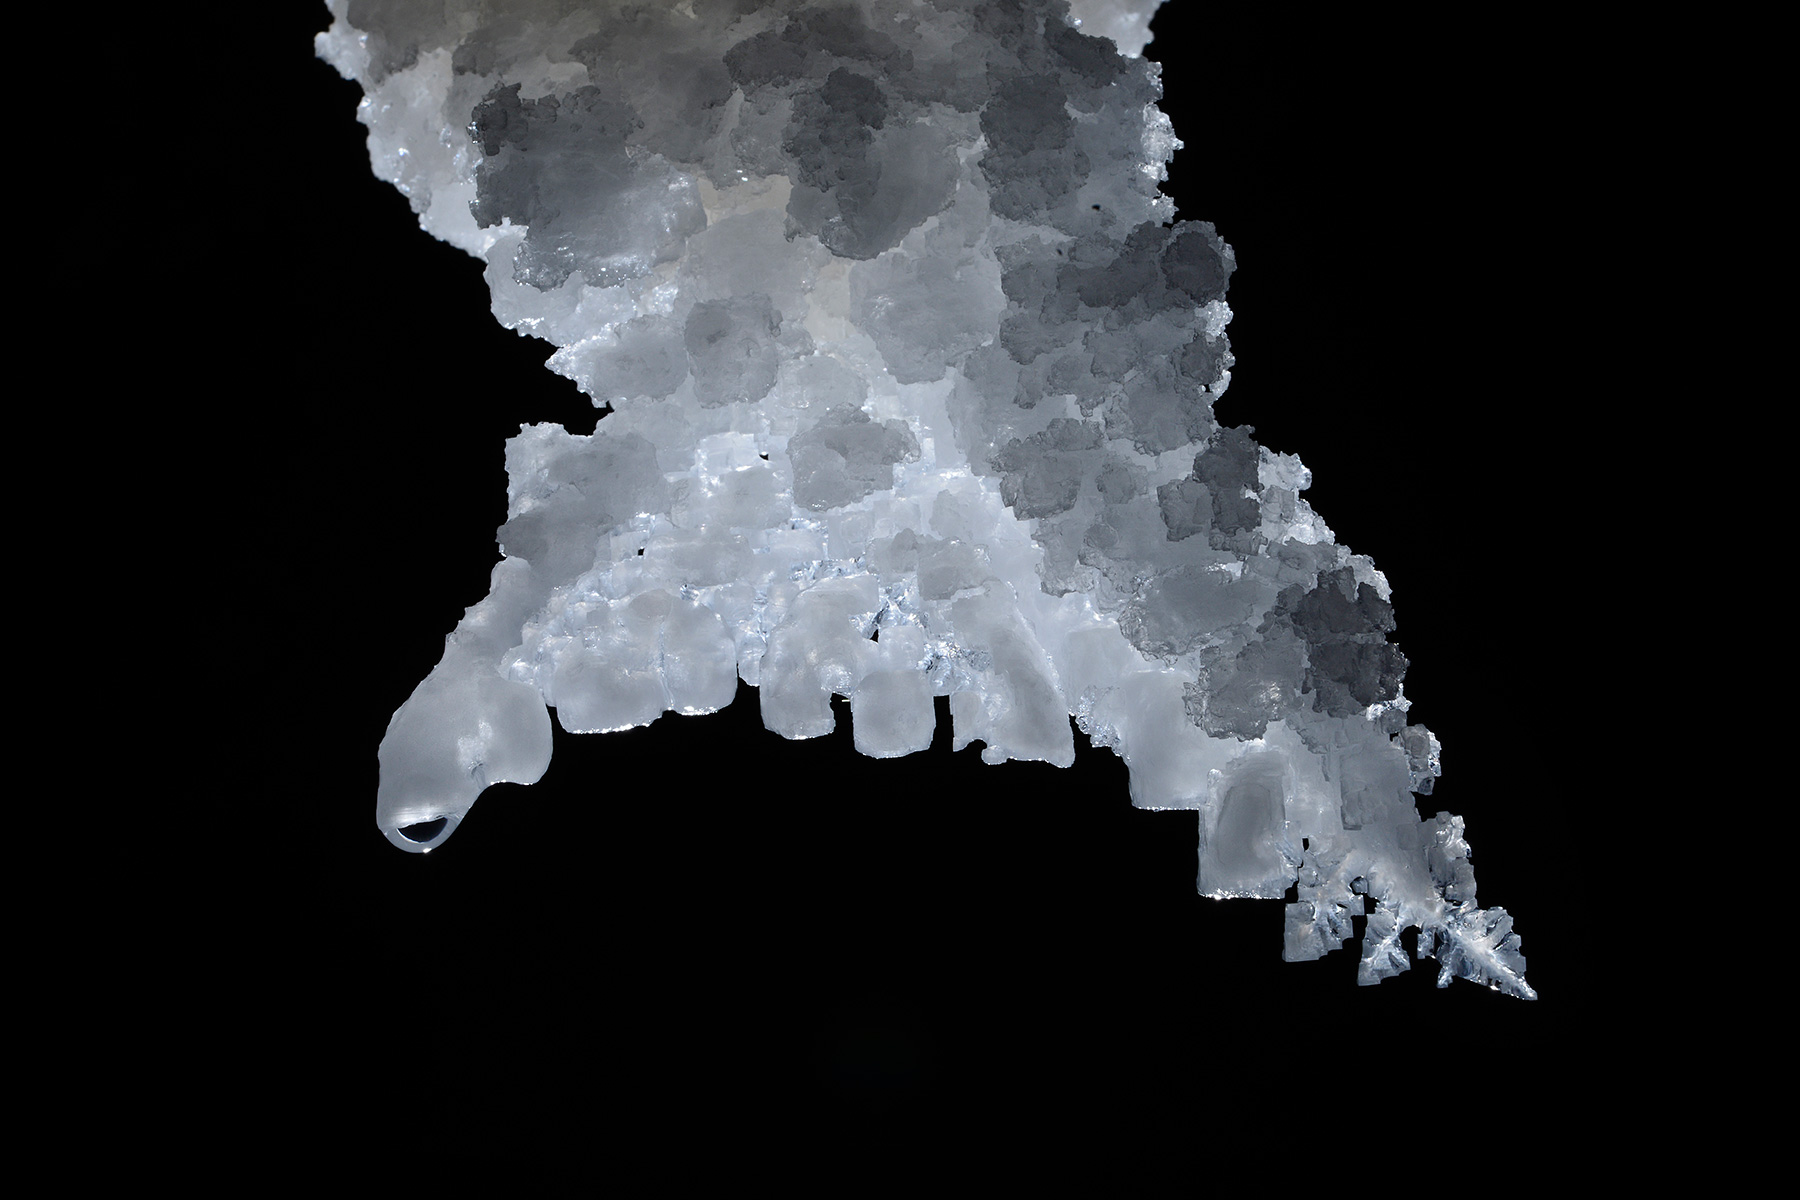 3N Cave(Namakdan, Qeshm, Iran) - Extrémité d'une stalactite de sel avec cristaux de halite